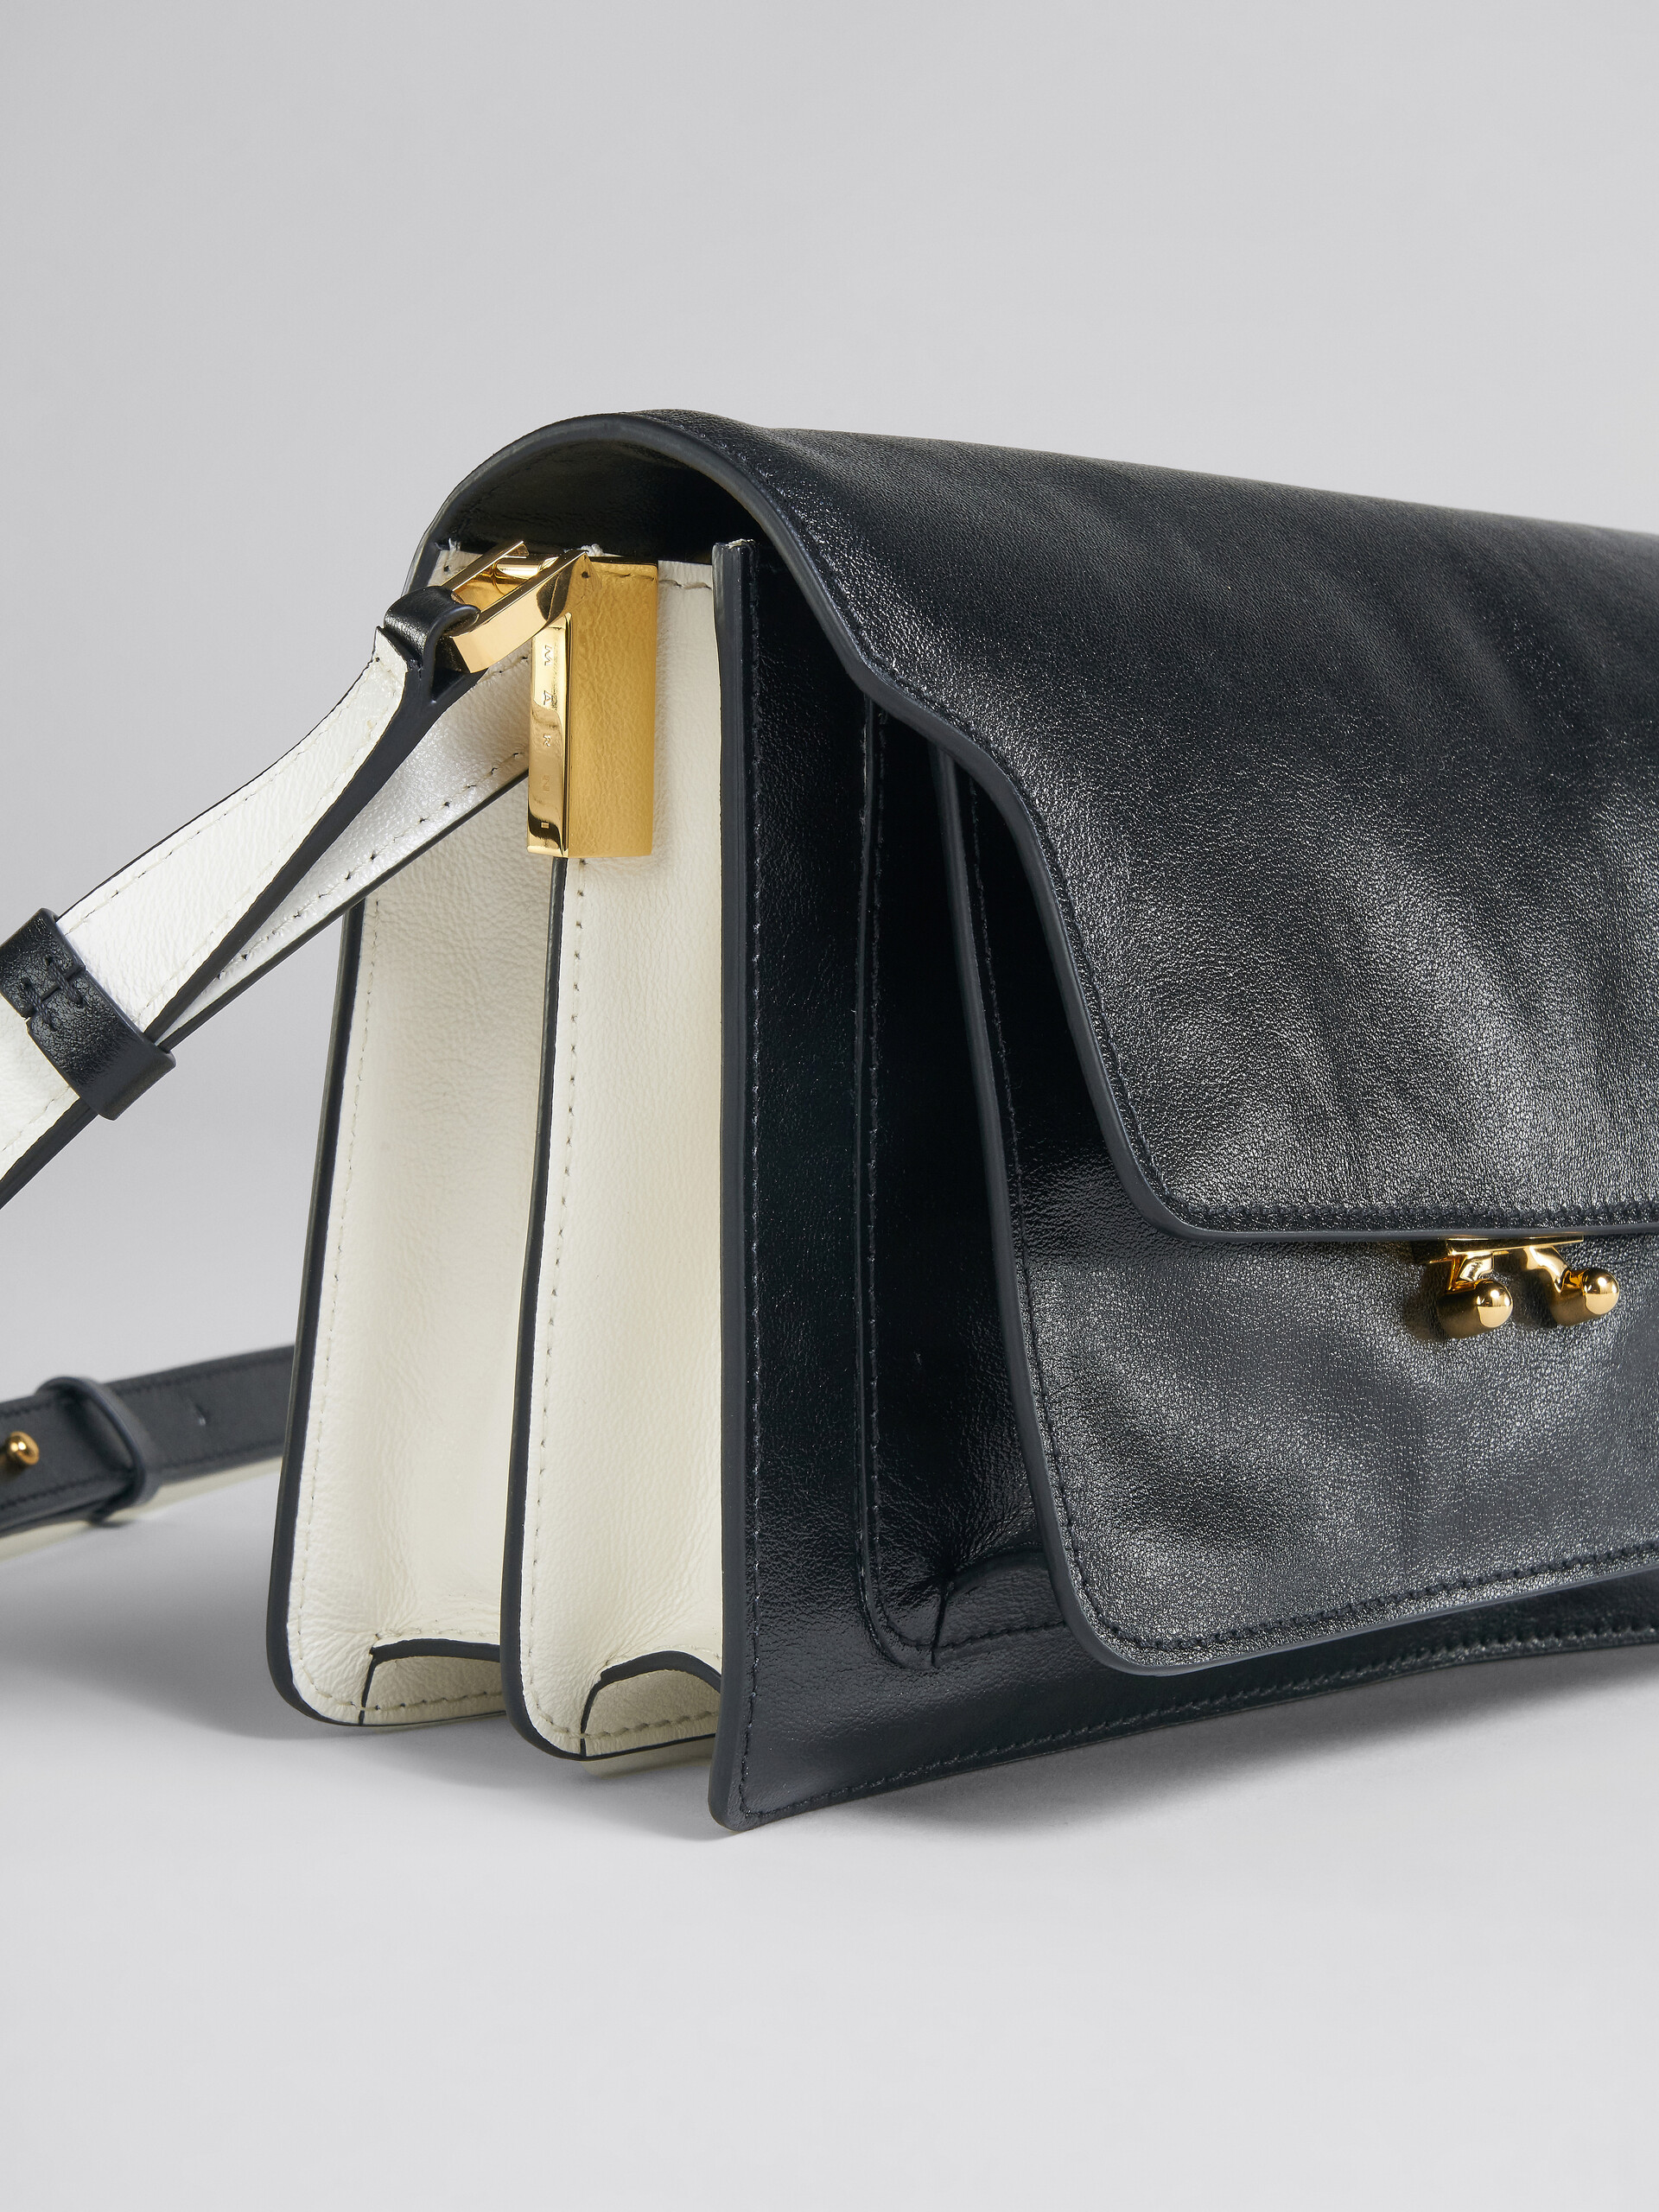 Trunk Soft Medium Bag in black and white leather - Shoulder Bag - Image 5